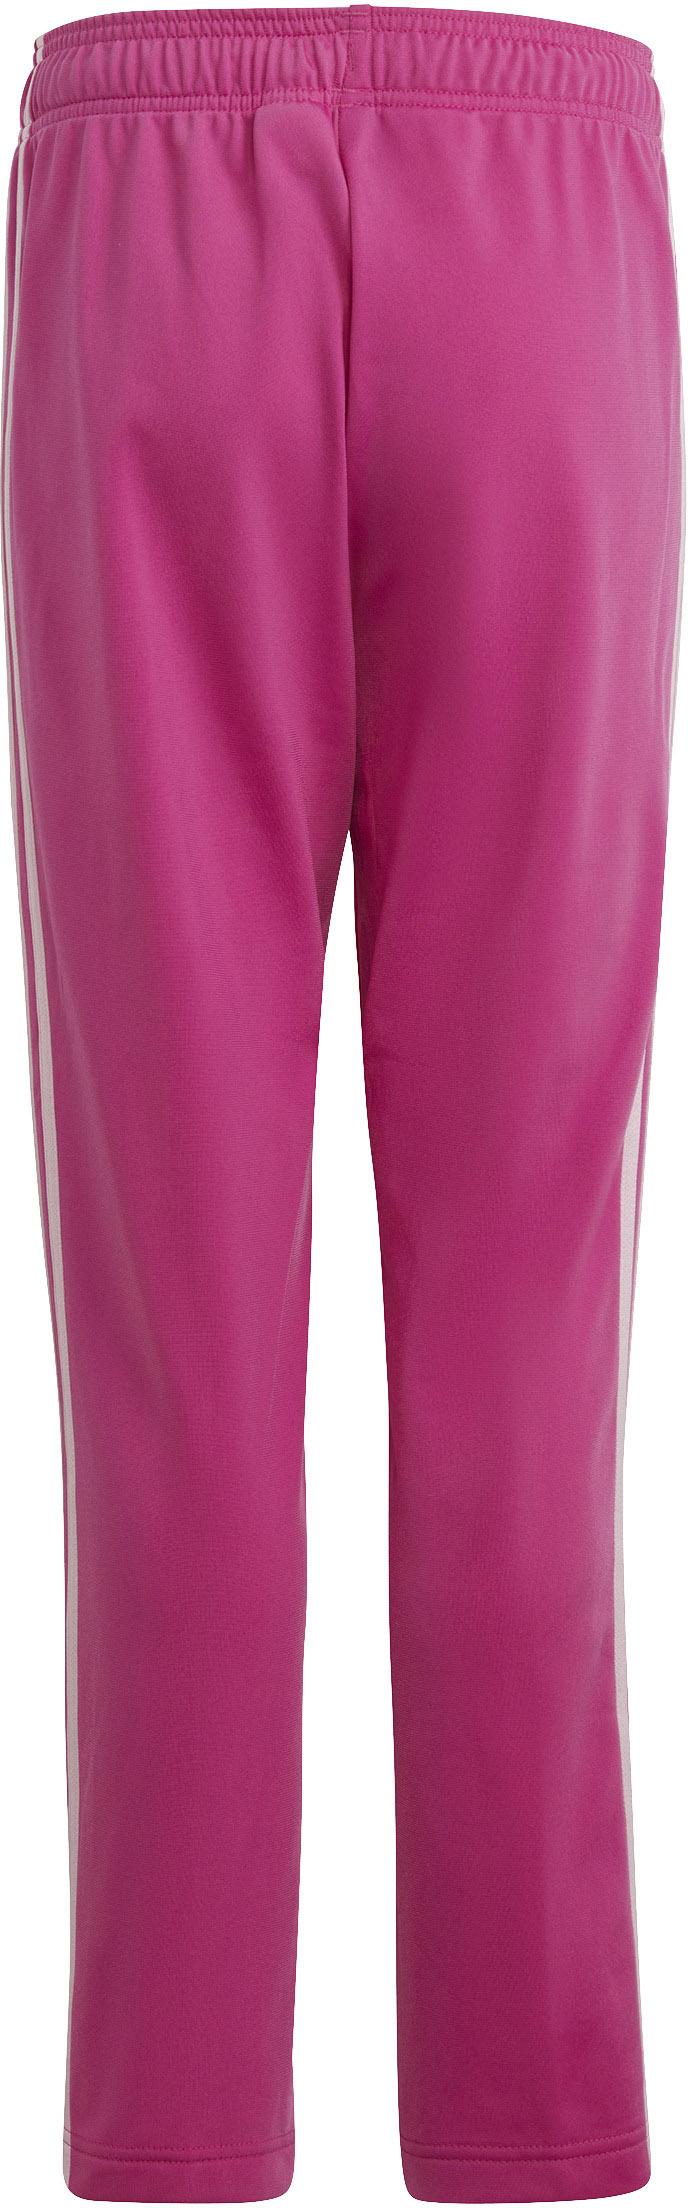 Adidas Mädchen Online pink-semi lucid kaufen von Trainingsanzug clear Shop fuchsia-white SportScheck im